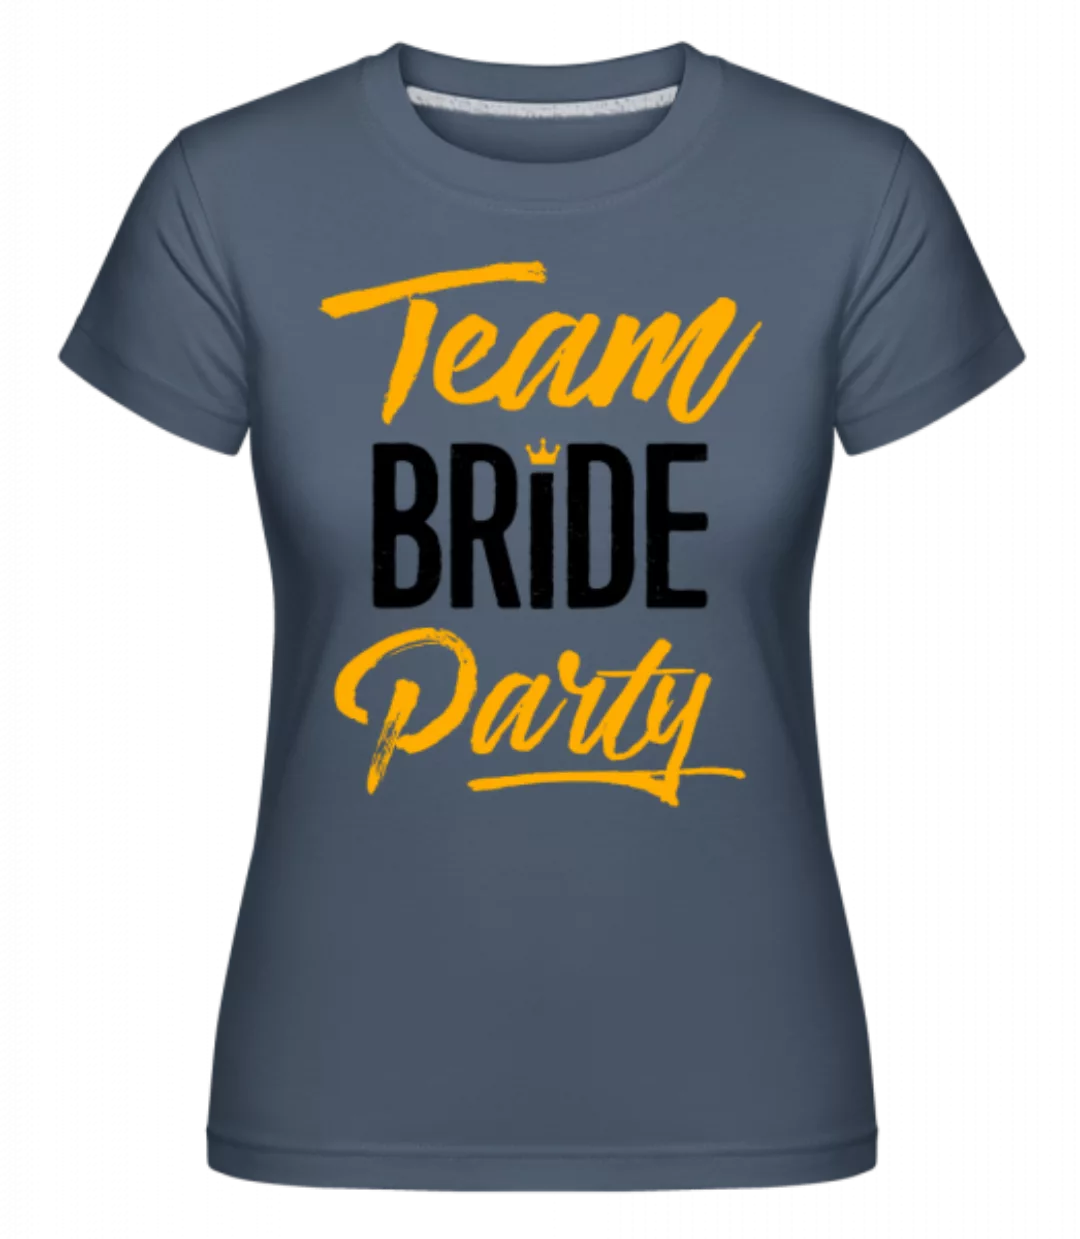 Team Bride Party · Shirtinator Frauen T-Shirt günstig online kaufen